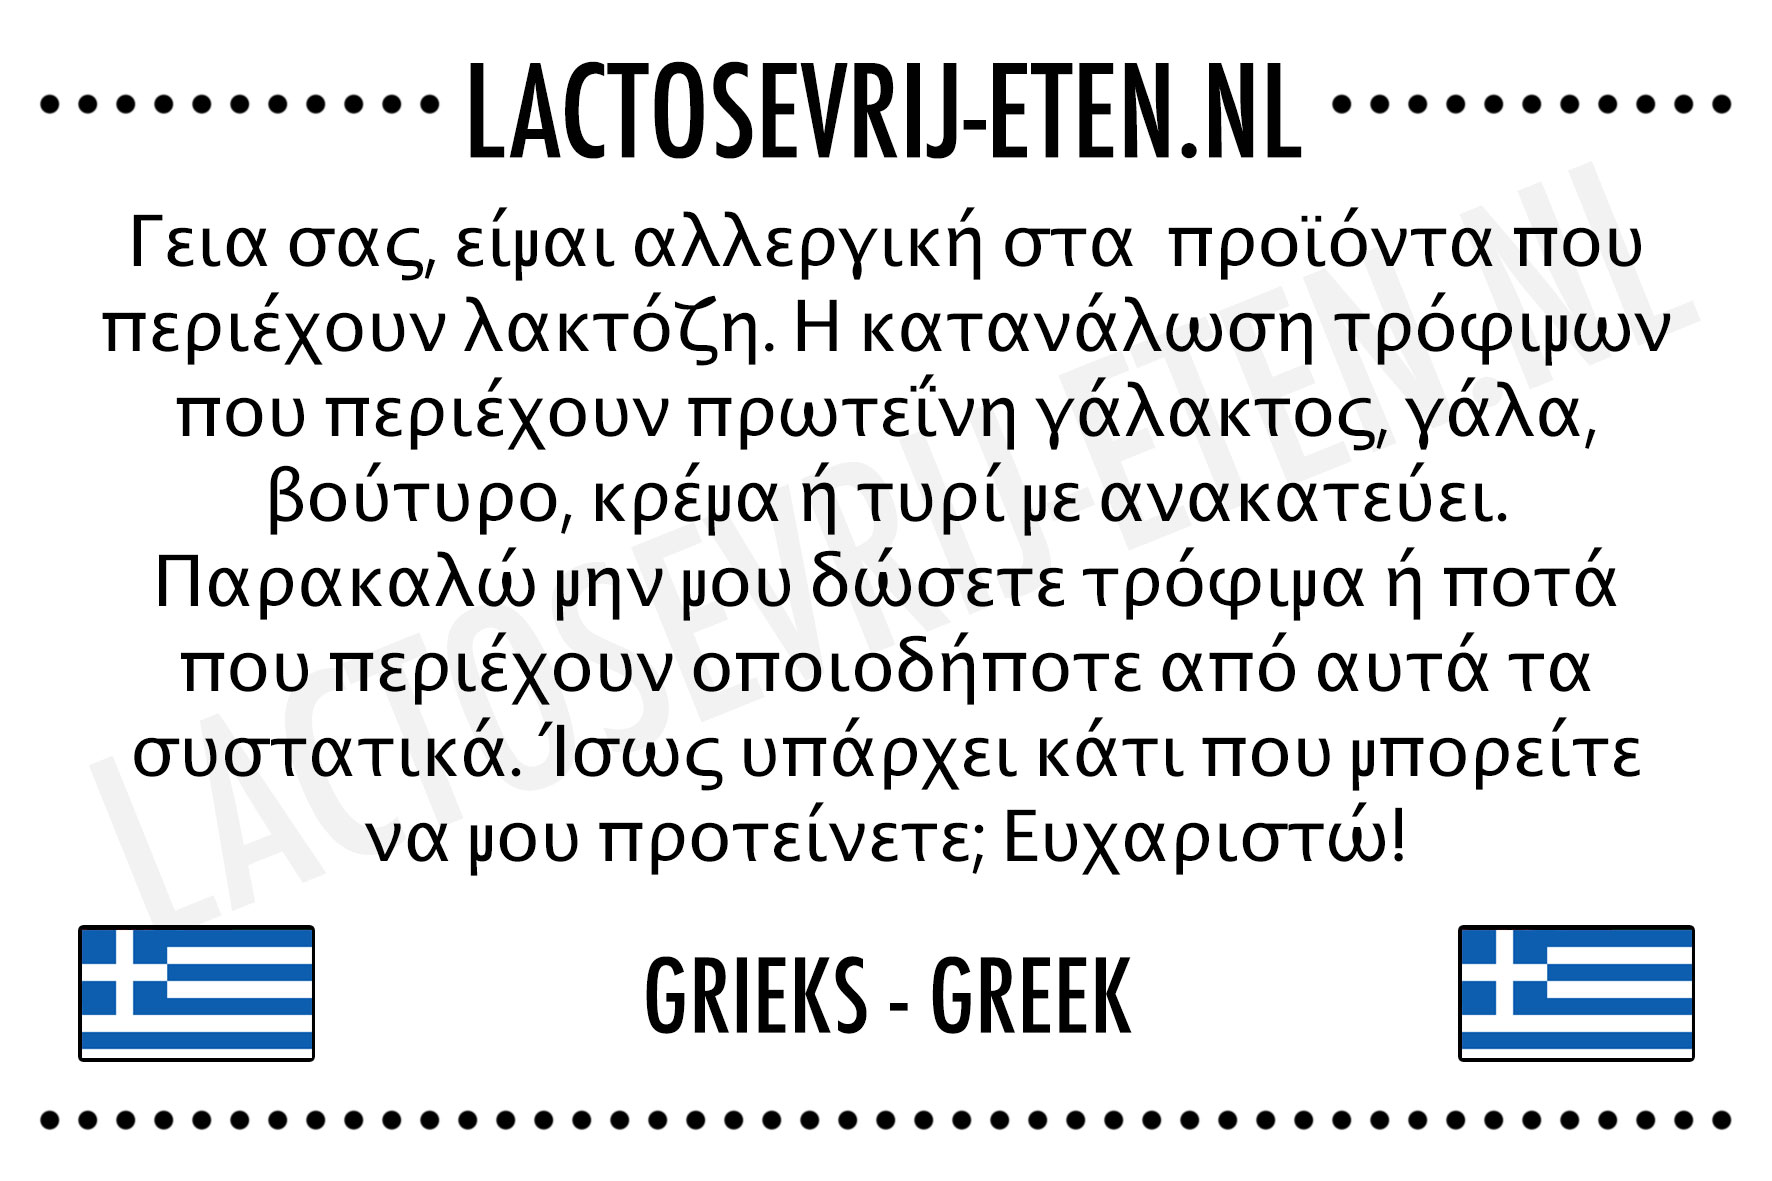 Lactosevrije allergenenkaart Grieks